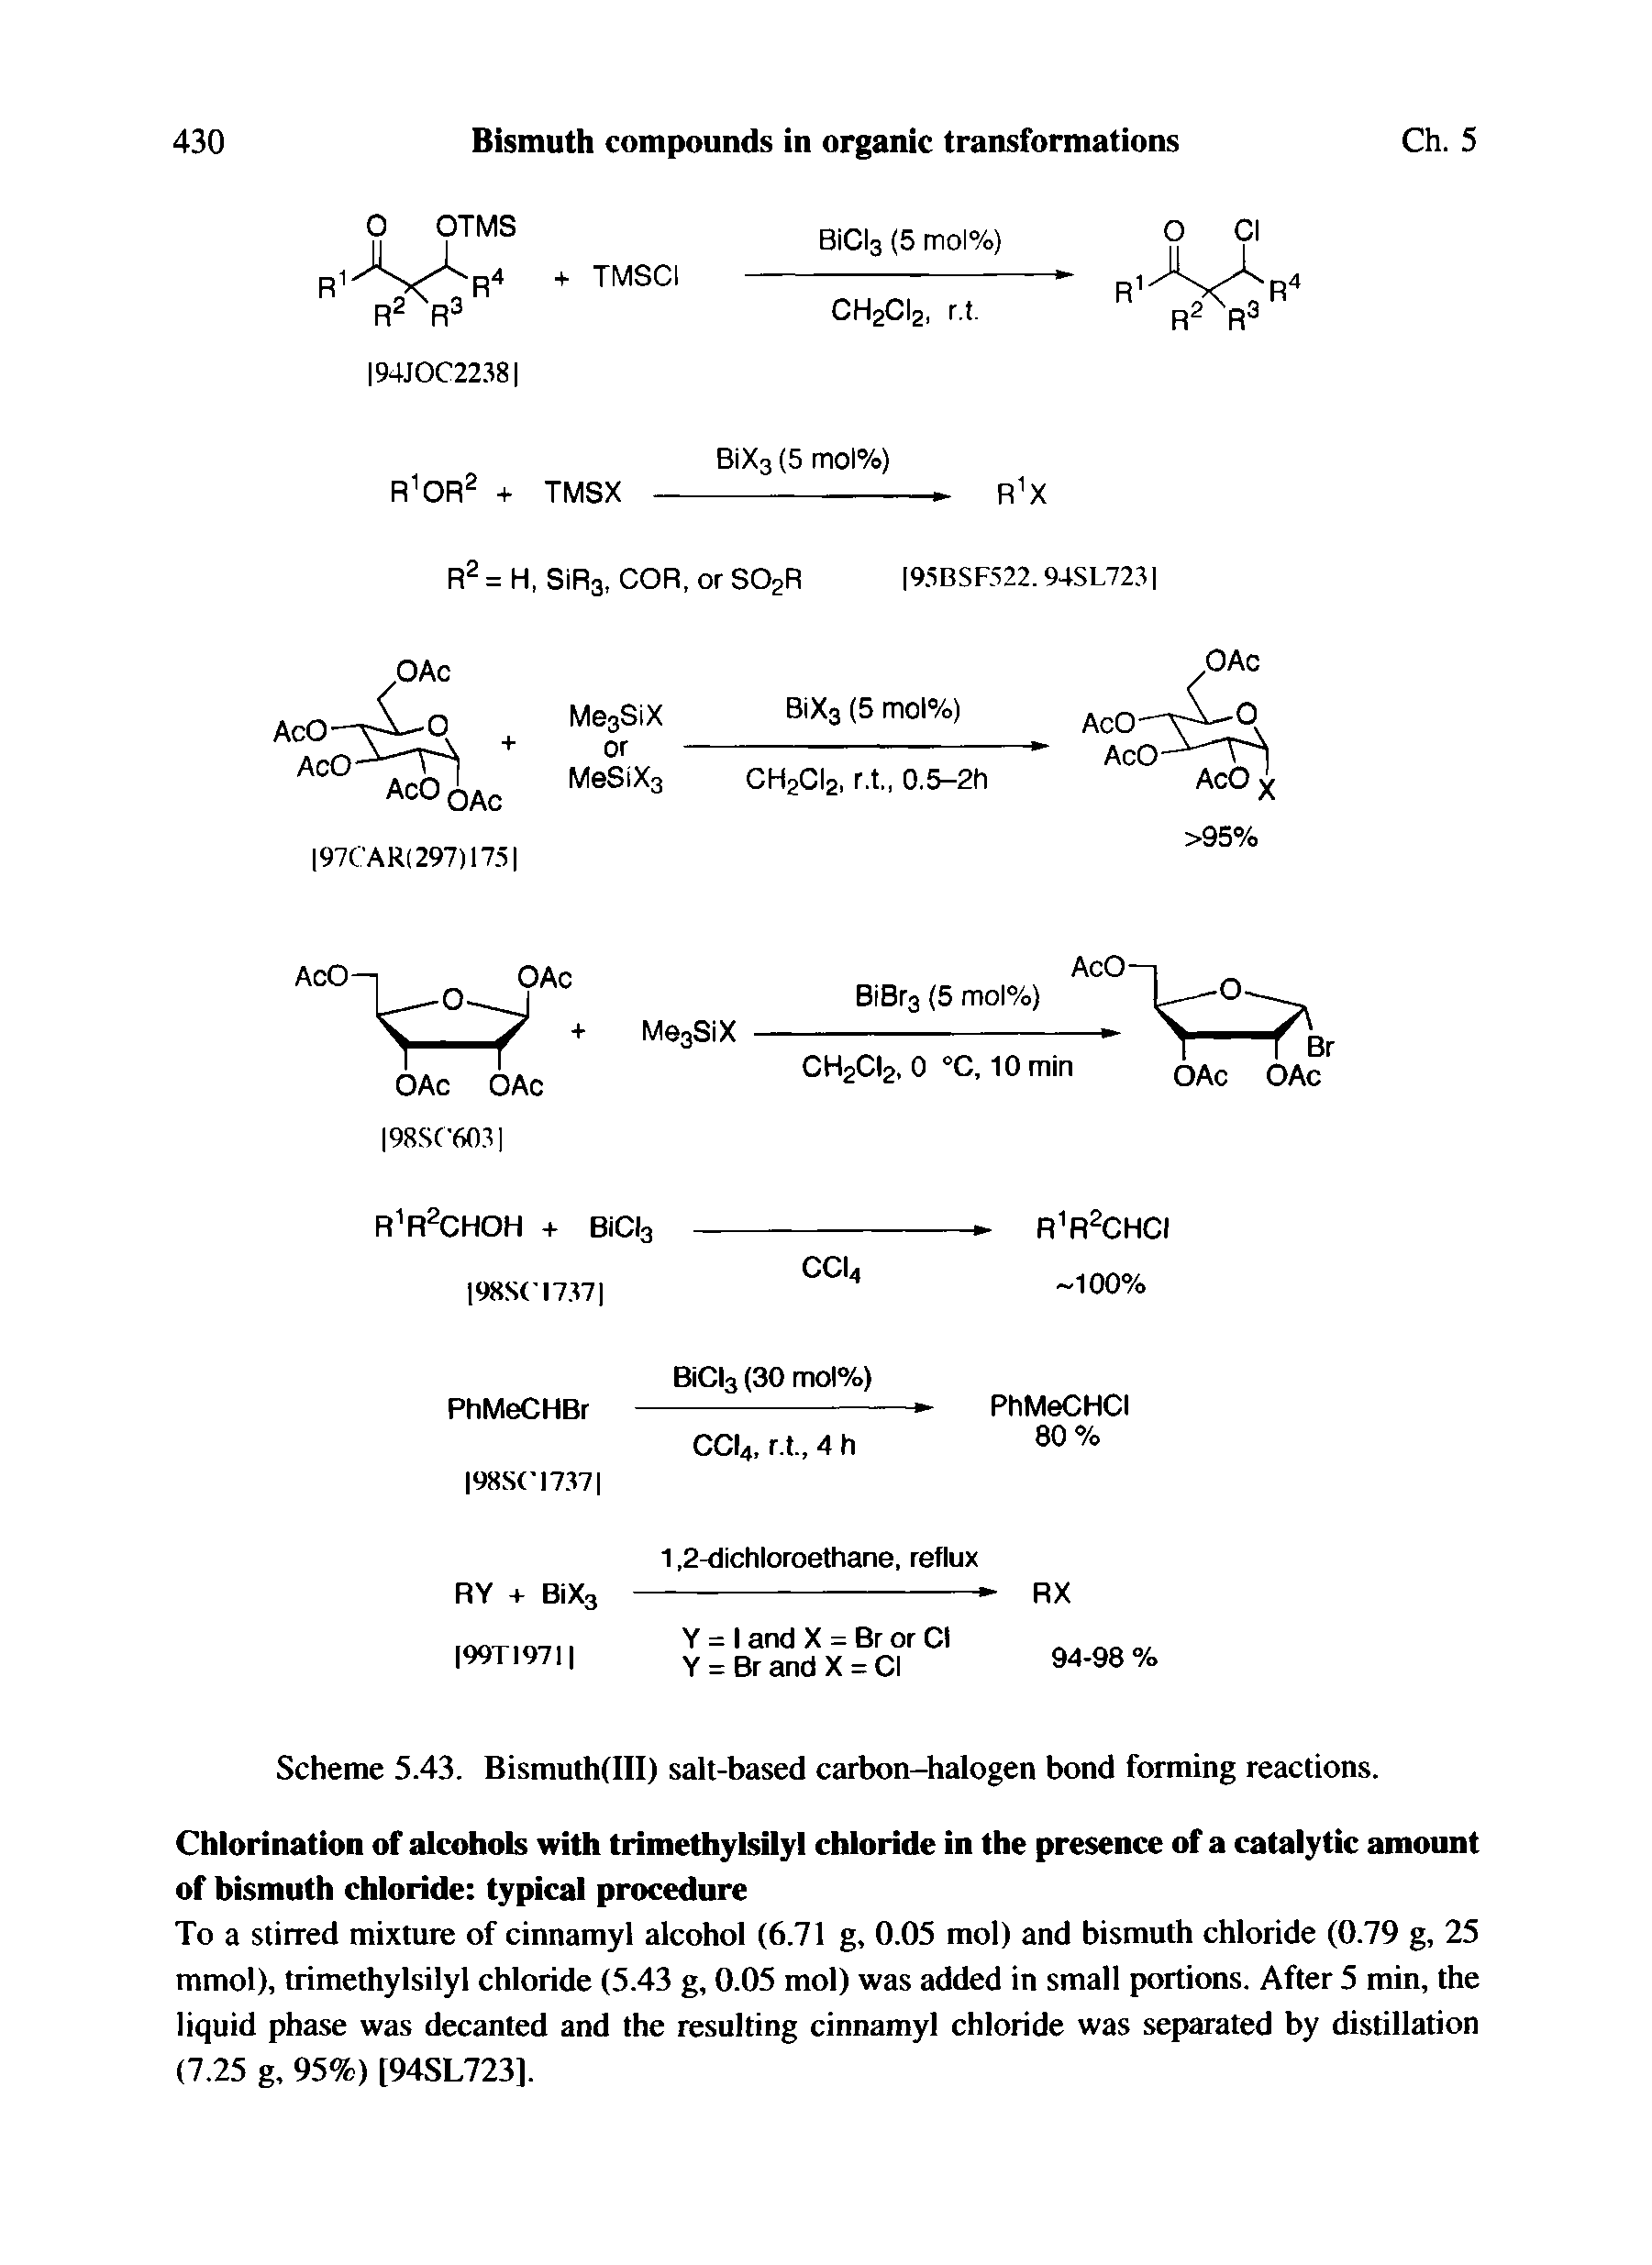 Scheme 5.43. Bismuth(III) salt-based carbon-halogen bond forming reactions.